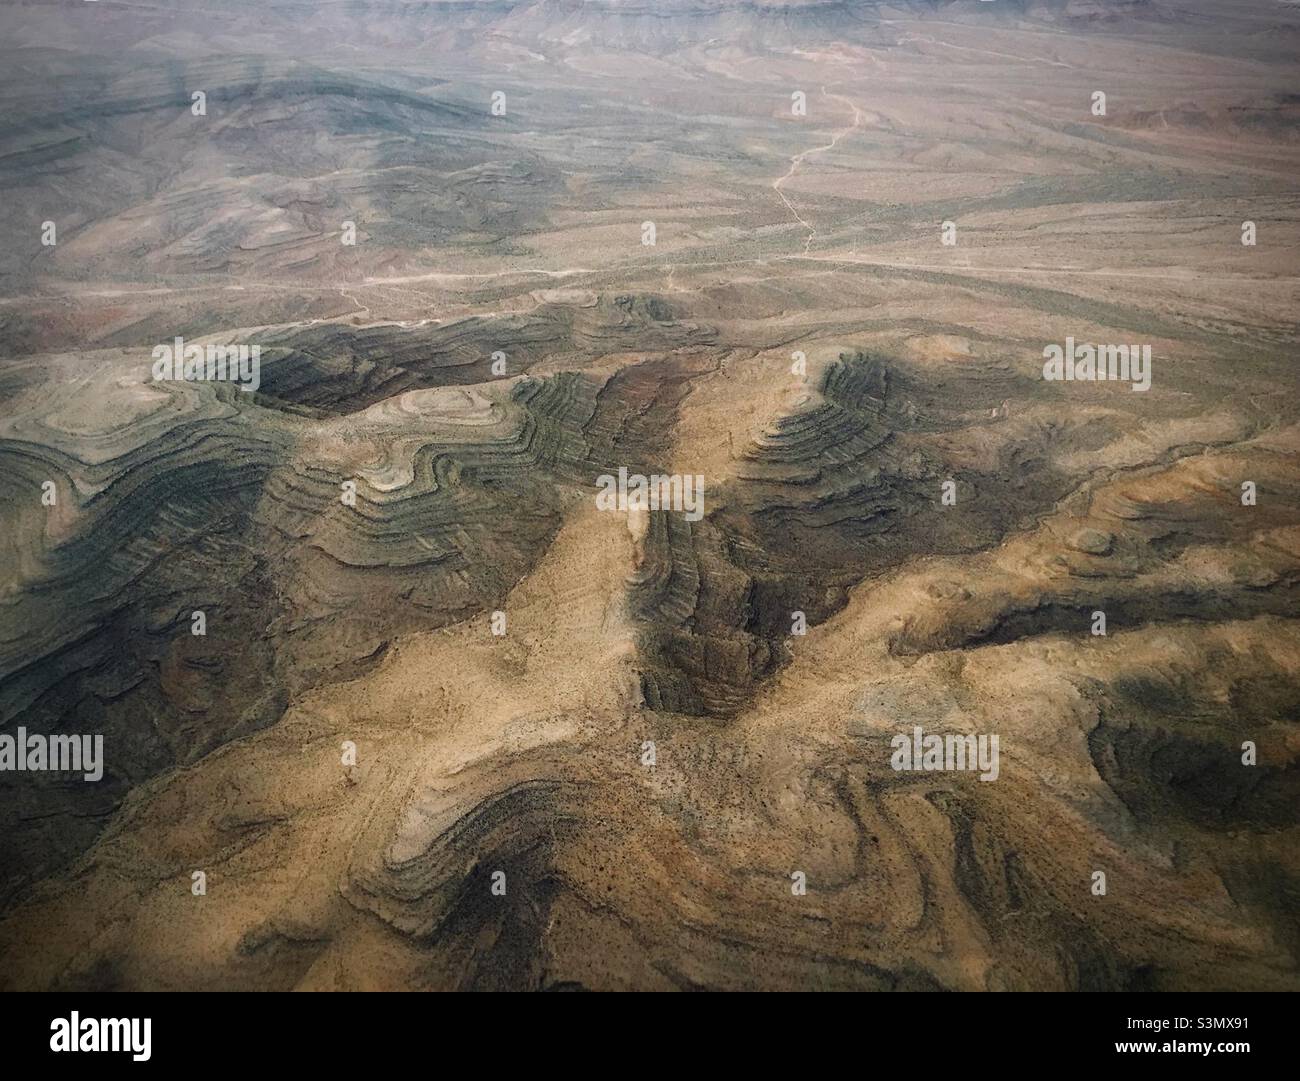 Luftaufnahme aus einem Flugzeug von Las Vegas nach Los Angles. Tiefe Täler und Berge wirken wie eine Landschaft aus einer anderen Pflanze. Stockfoto